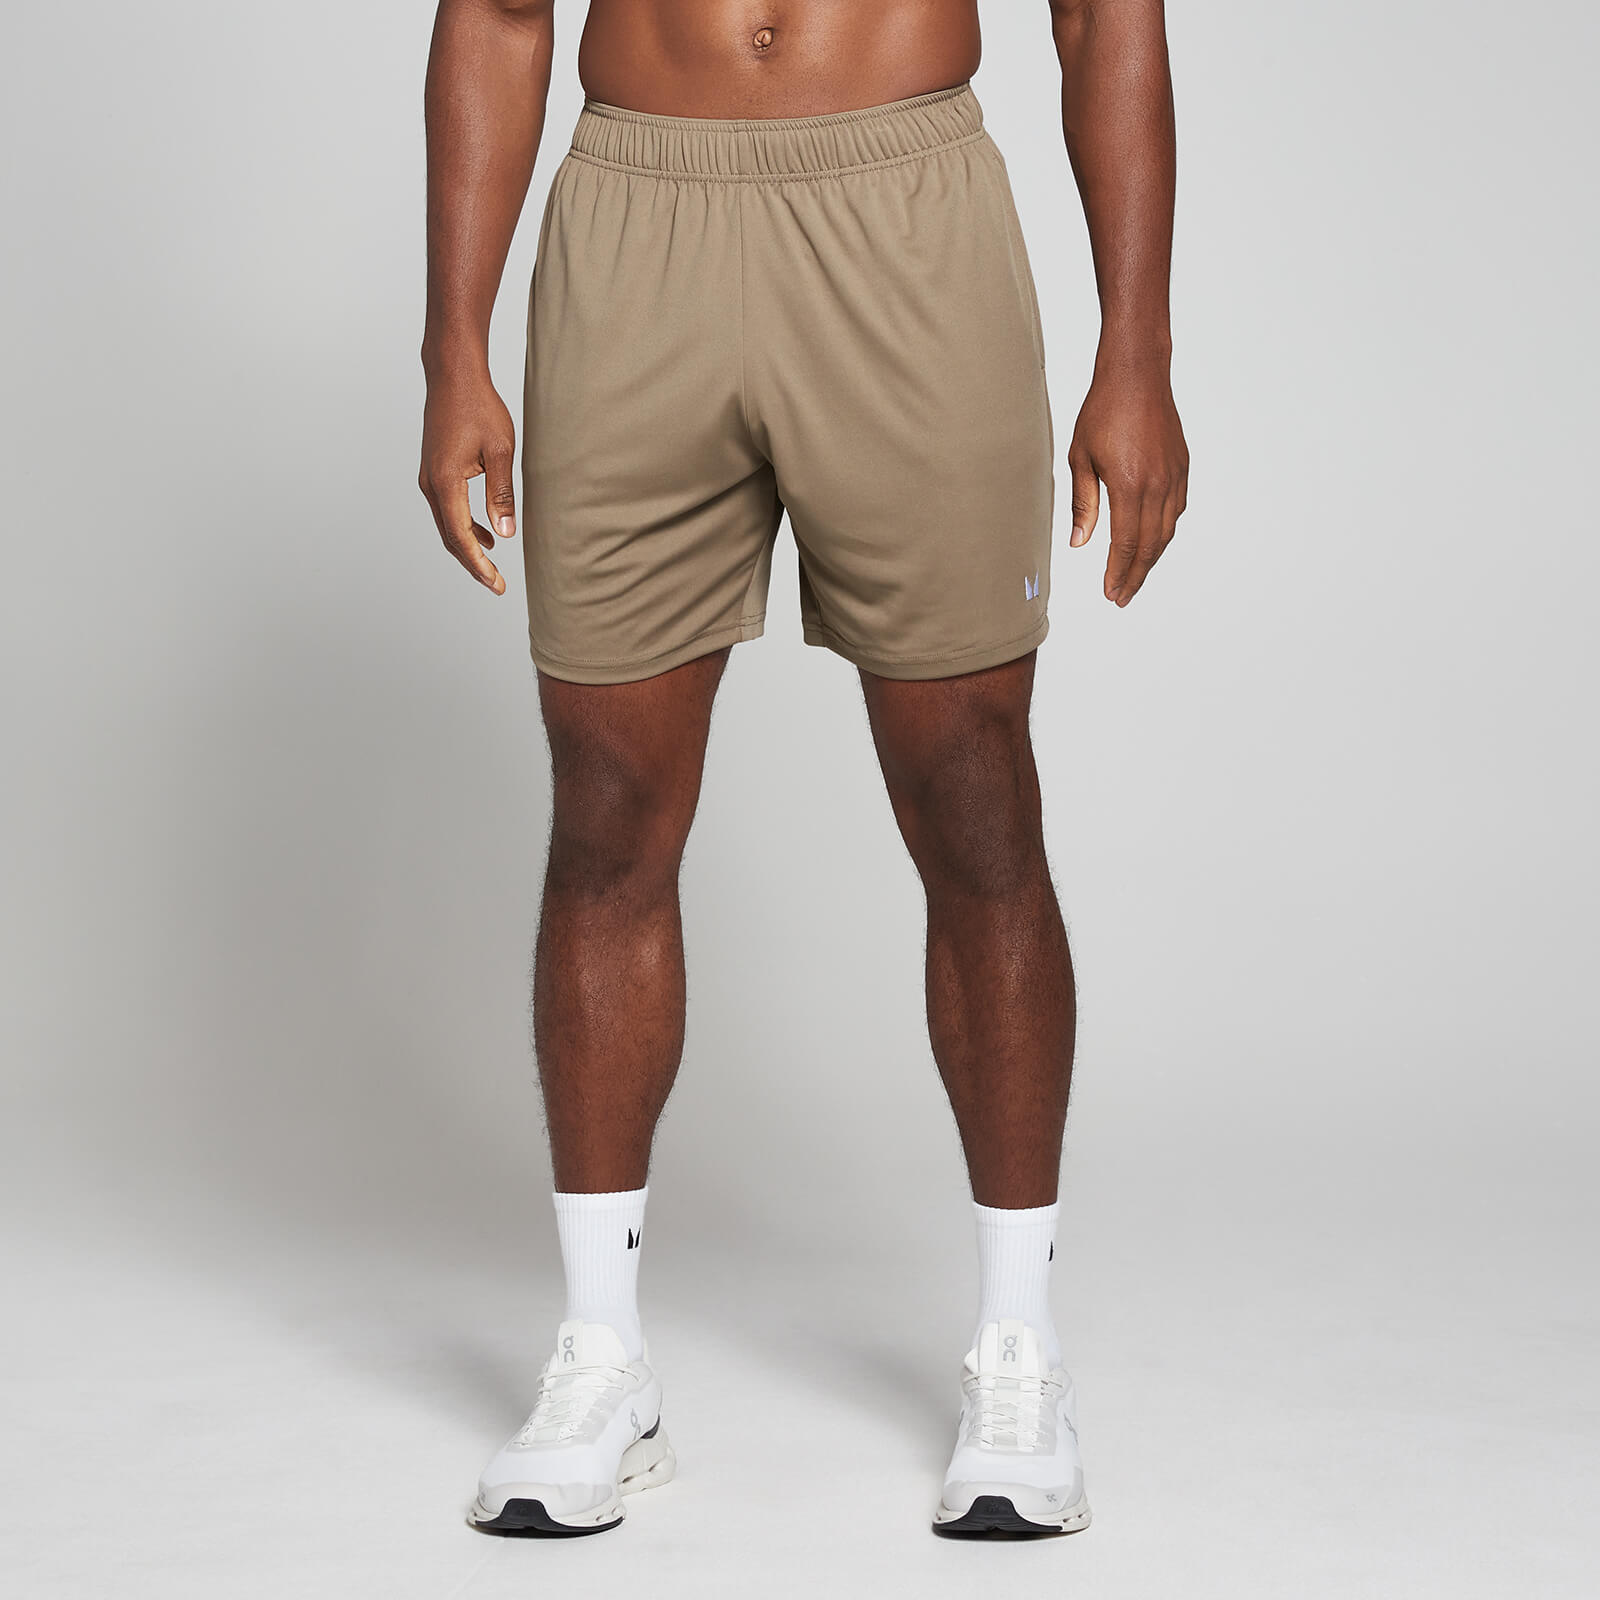 男士輕量運動短褲 - 柔和褐